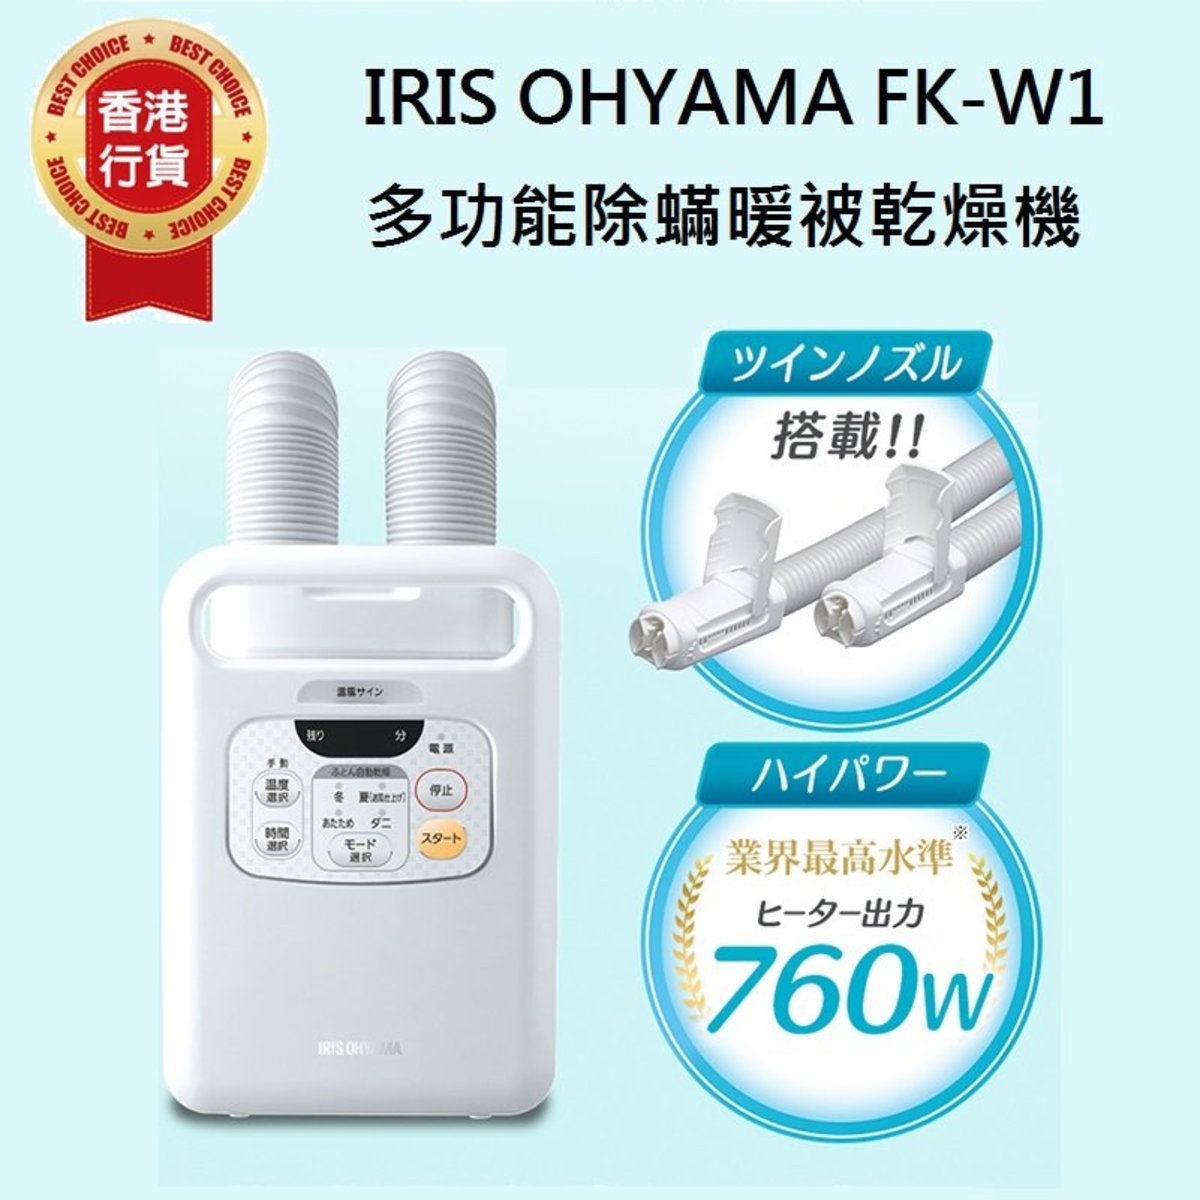 Iris Ohyama FK-W1 雙管出風道多功能除蟎暖被乾燥機